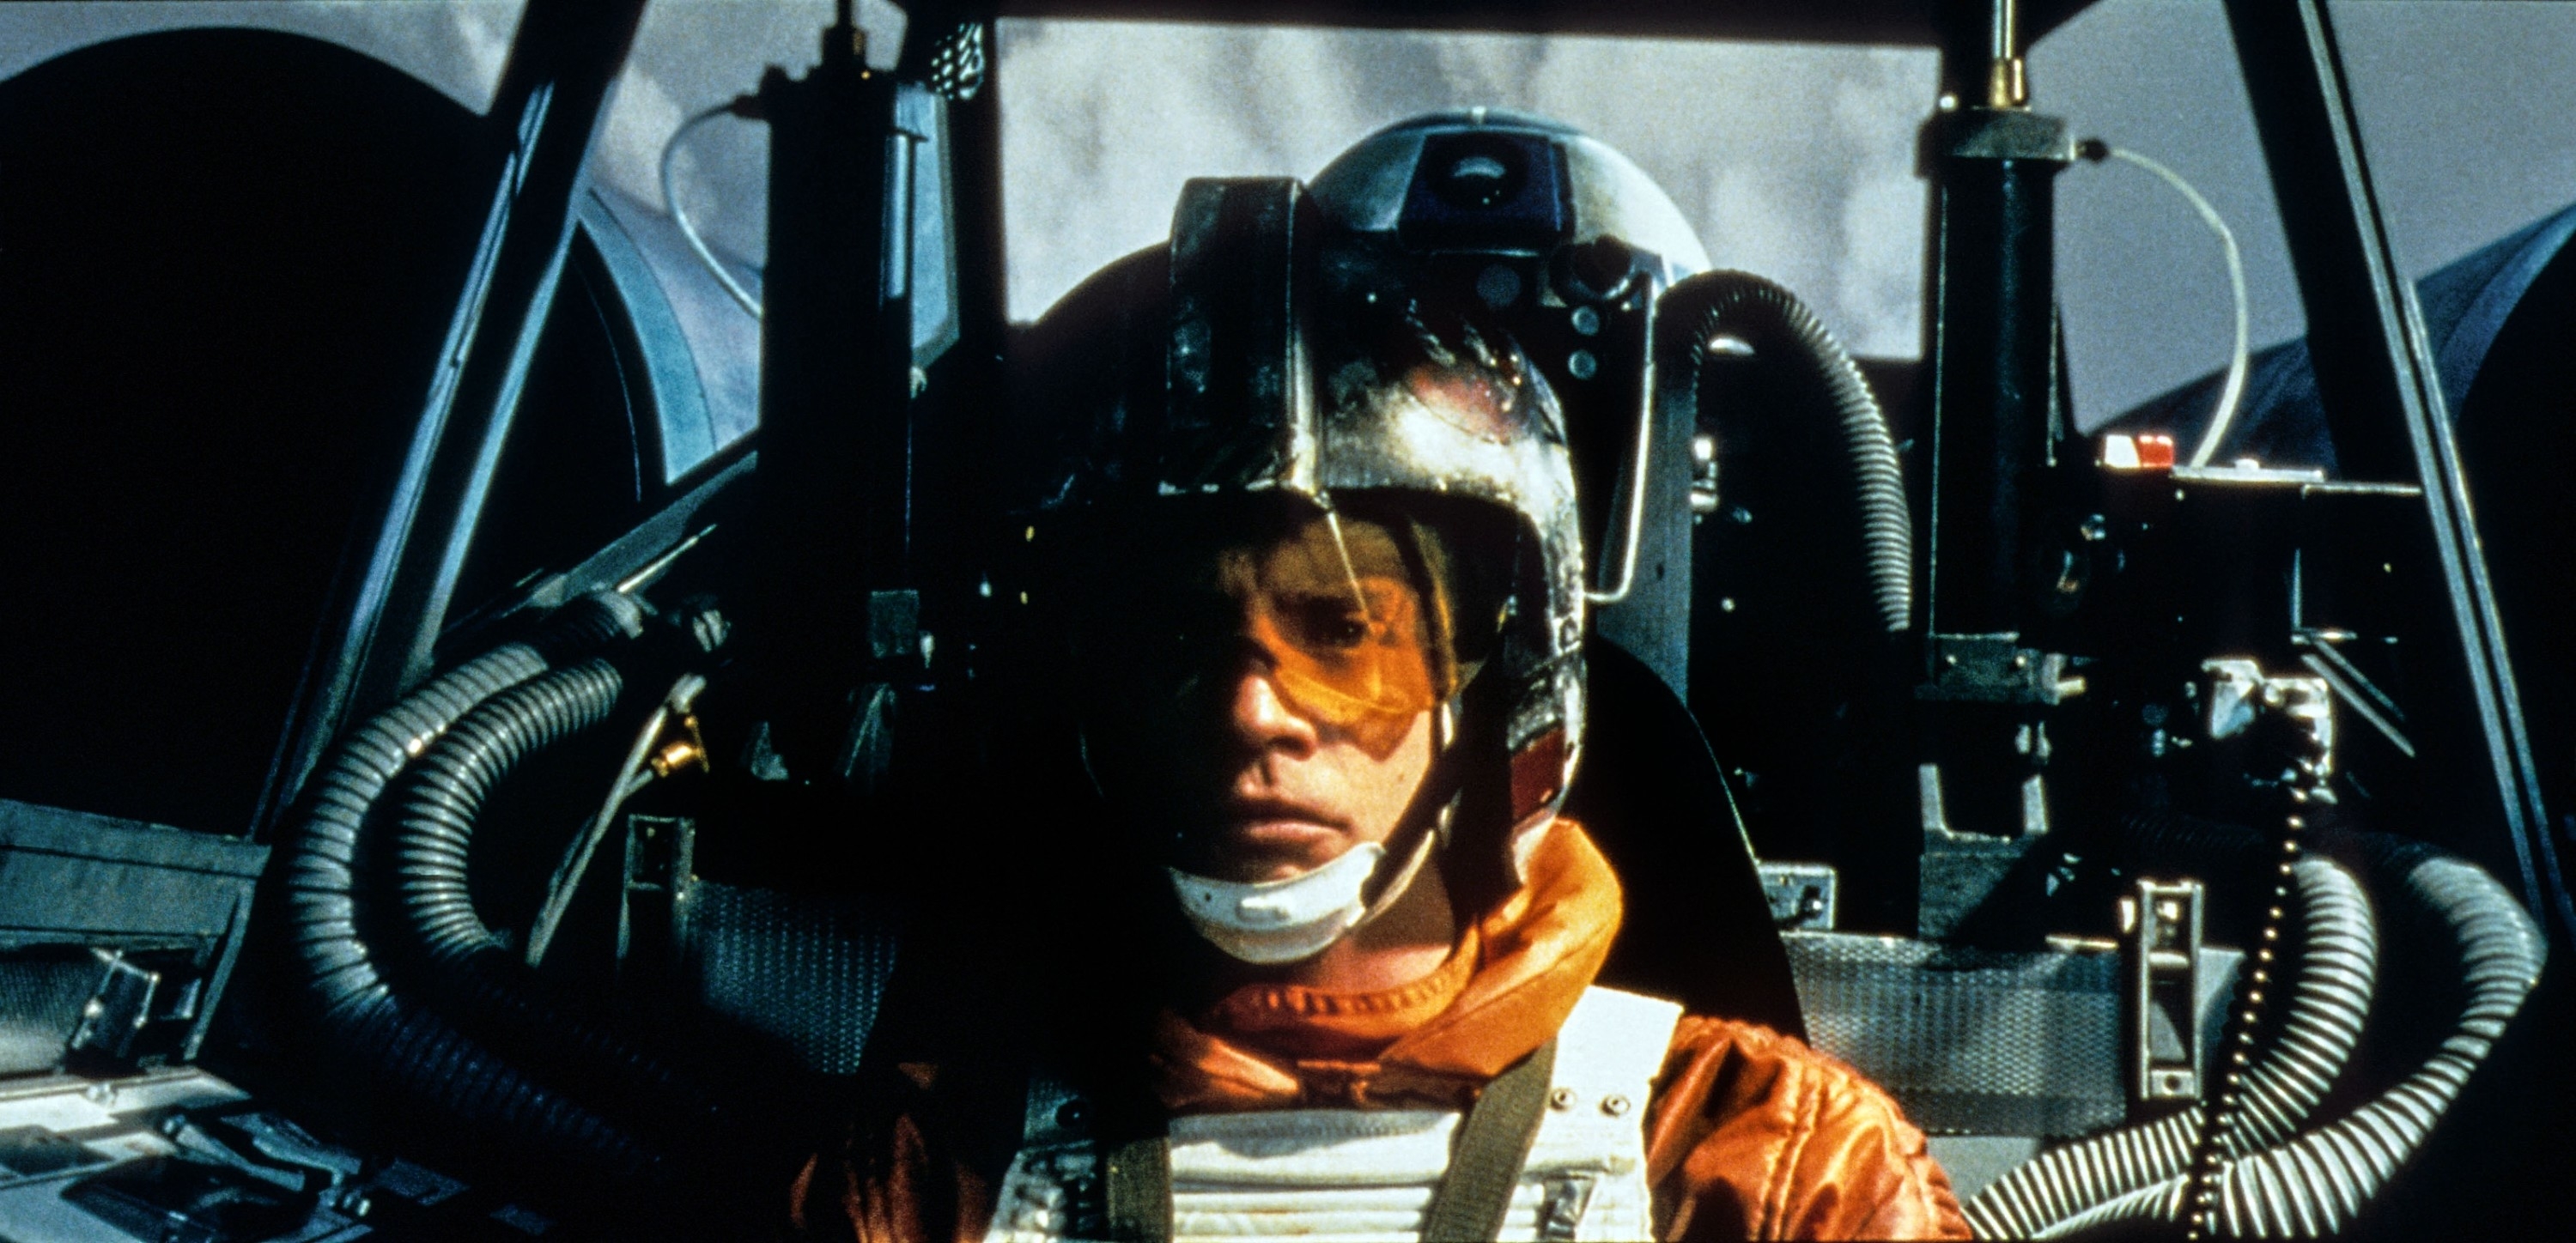 Luke Skywalker in pilot gear sitting in the cockpit of an X-wing fighter